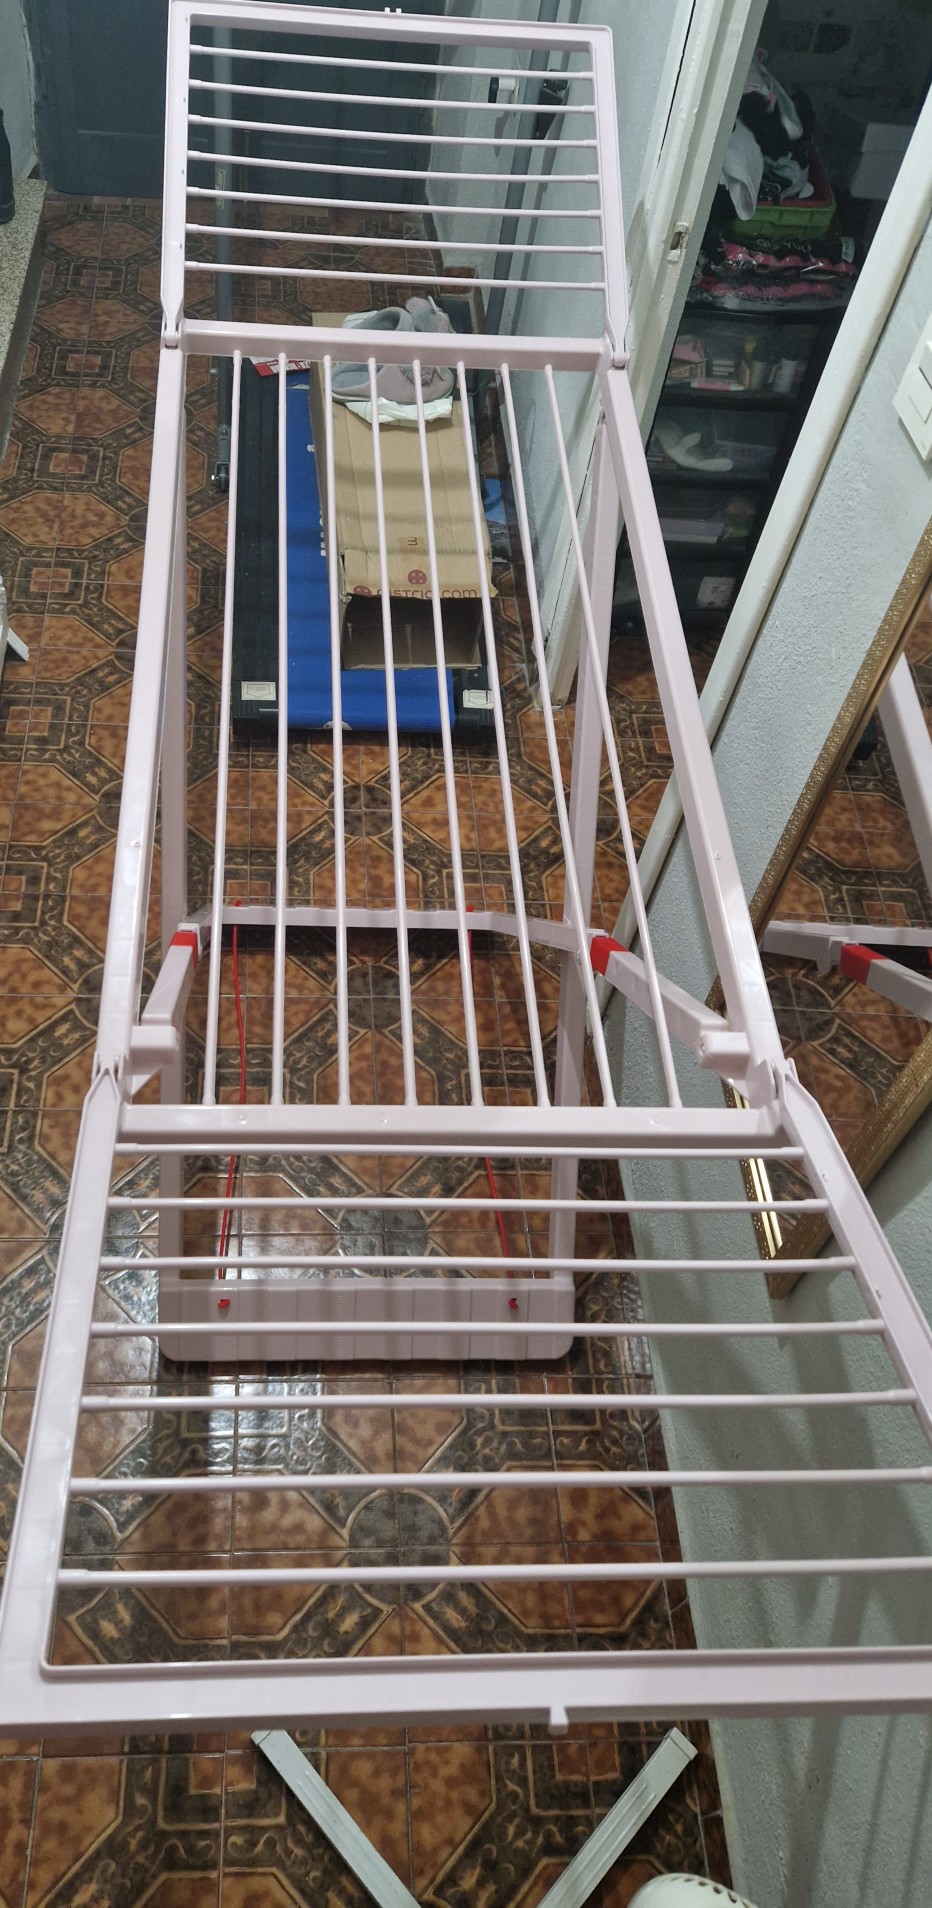 Tendedero plegable de resina– tendal abatible balcón para interior y exteri